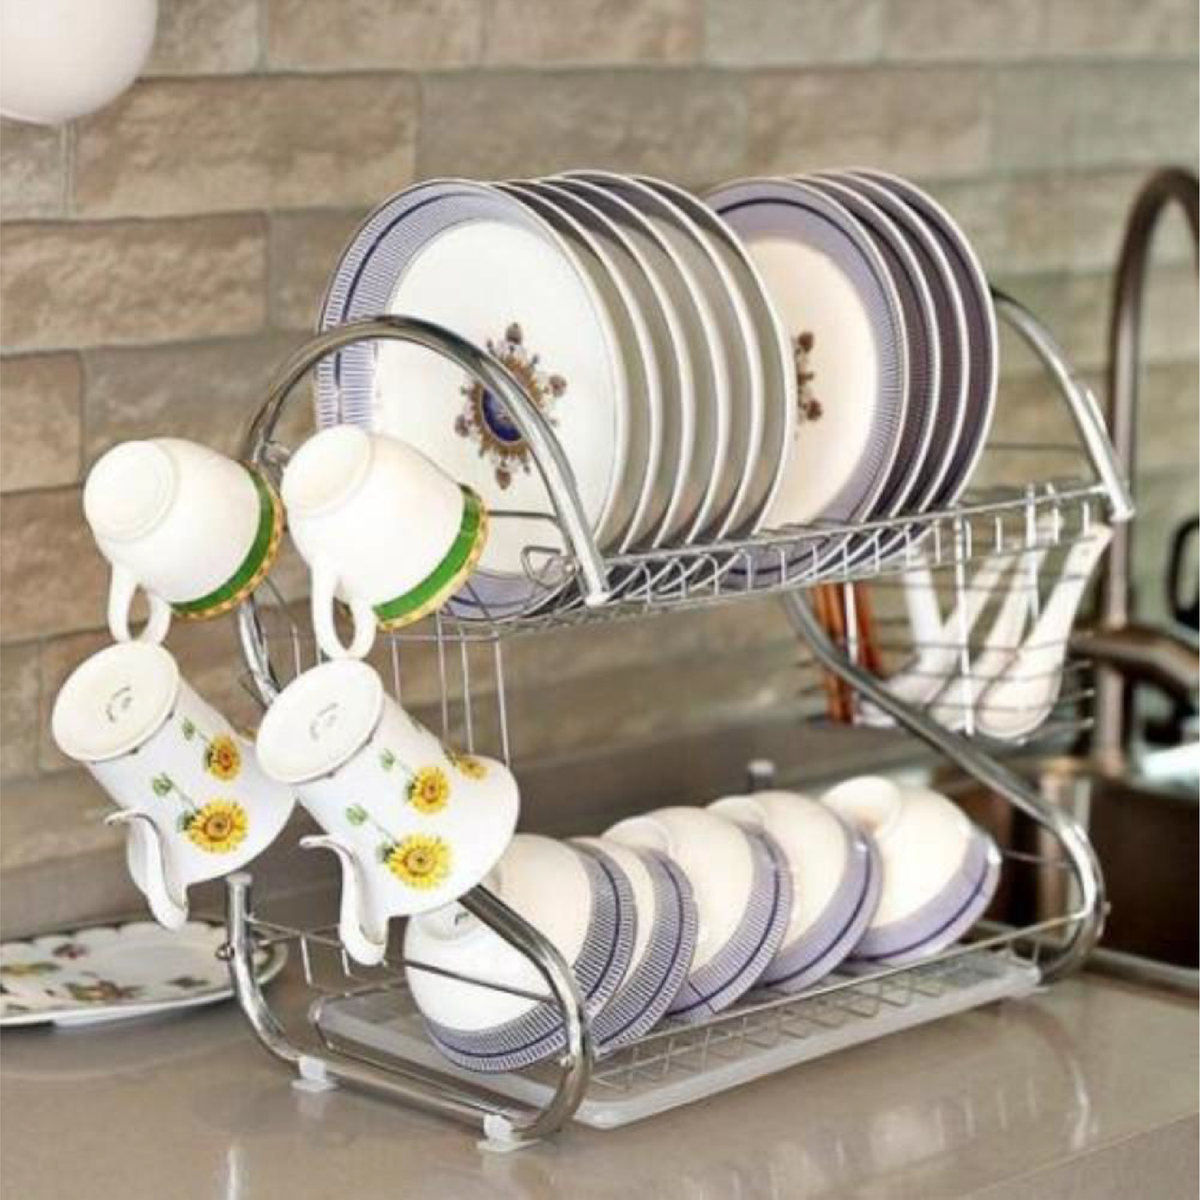 Escurridor de platos trastes cubiertos secador accesorios de cocina 2 Tier  NUEVO